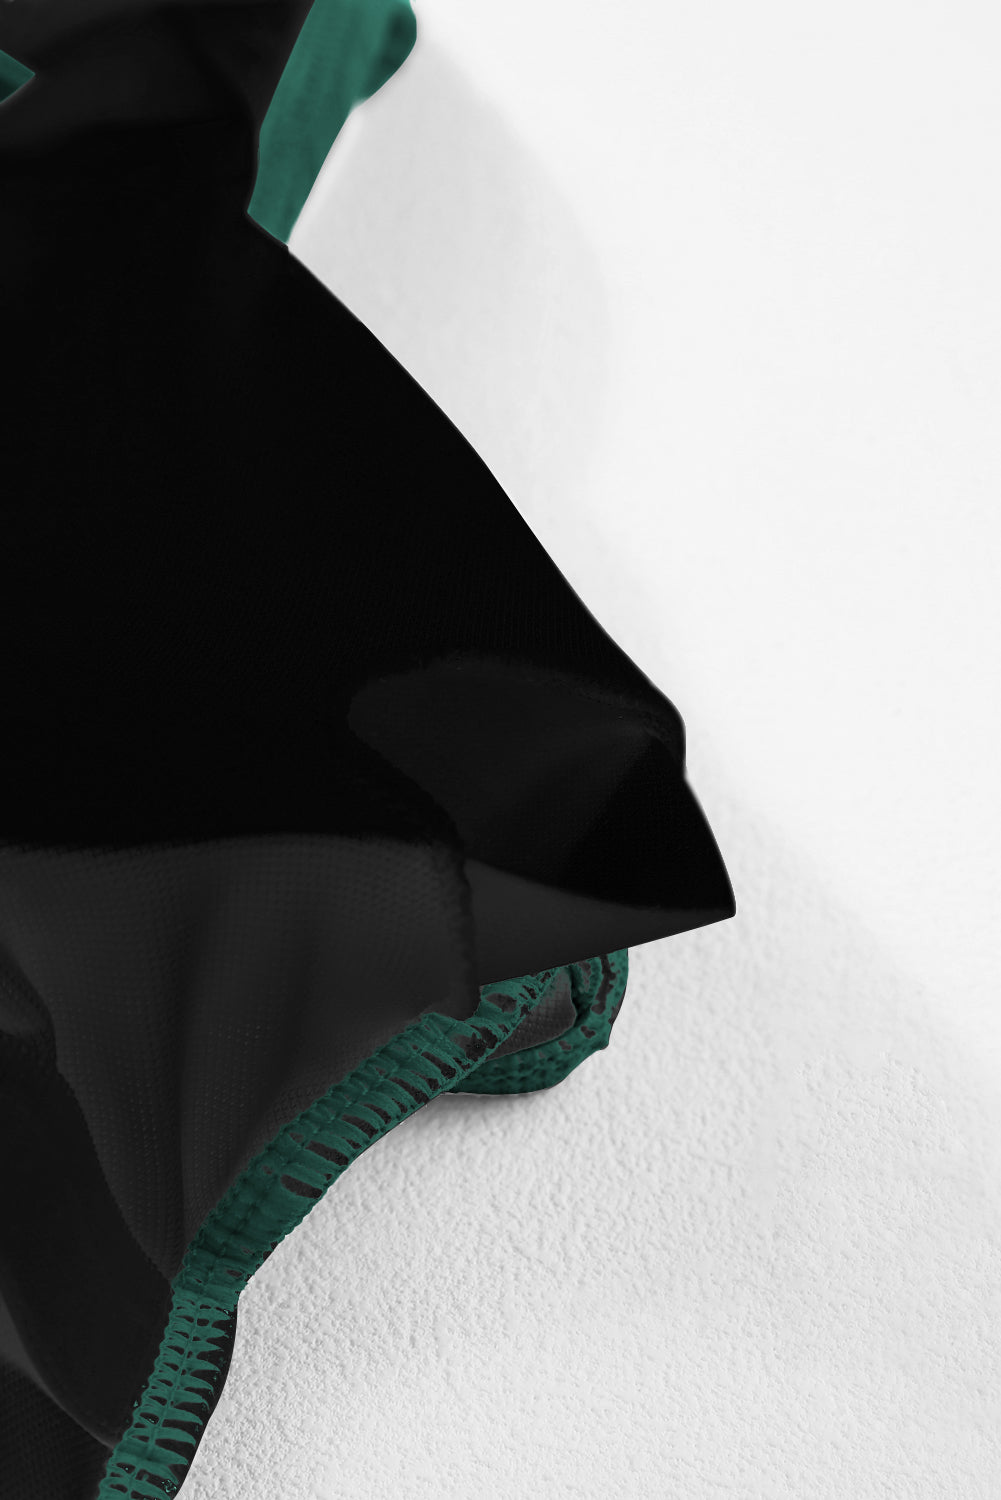 Crni jednodijelni kupaći kostim s rebrastim širokim izrezom